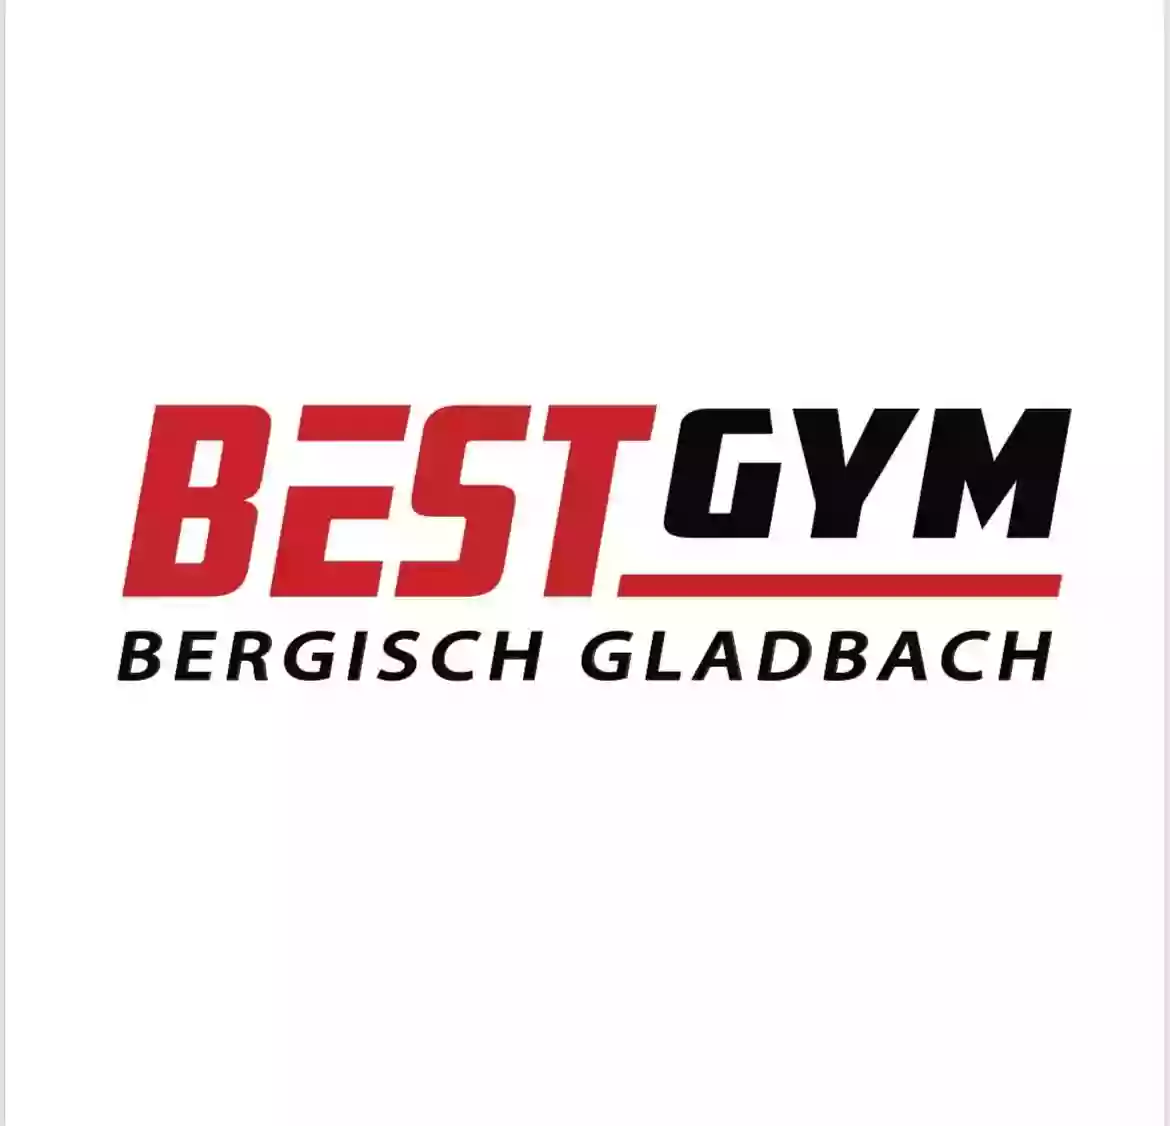 Kampfsportschule Bergisch Gladbach - Best Gym